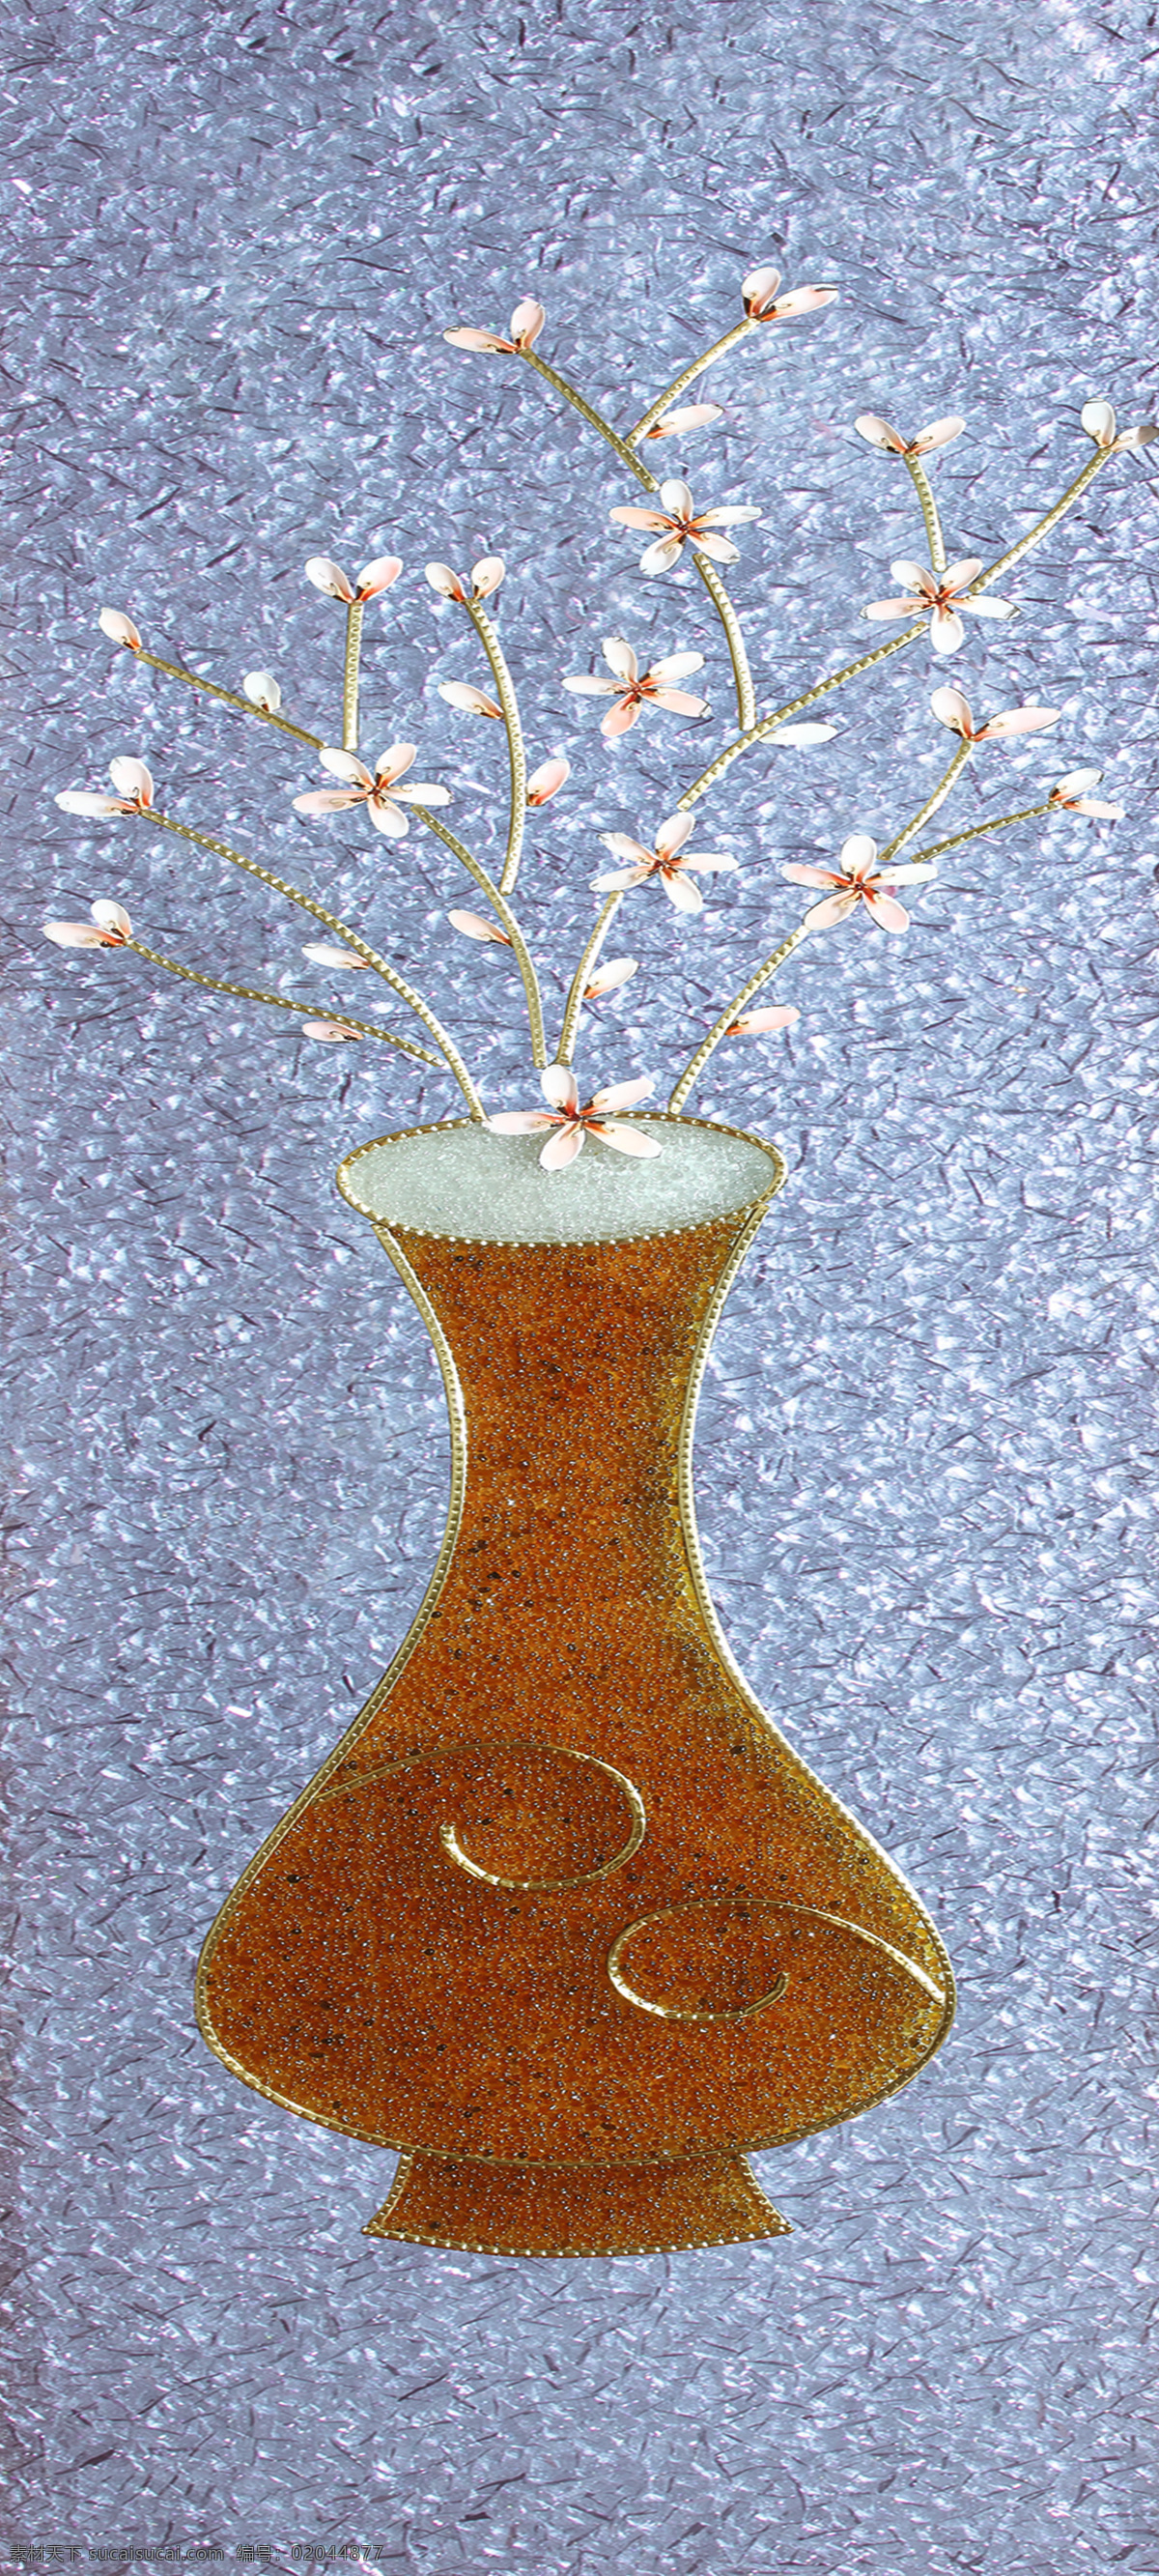 玄关 冰晶 花瓶 背景 墙 玄关浮雕花瓶 彩雕梅花 冰晶花瓶 插花艺术 琉璃花瓶 琉璃梅花